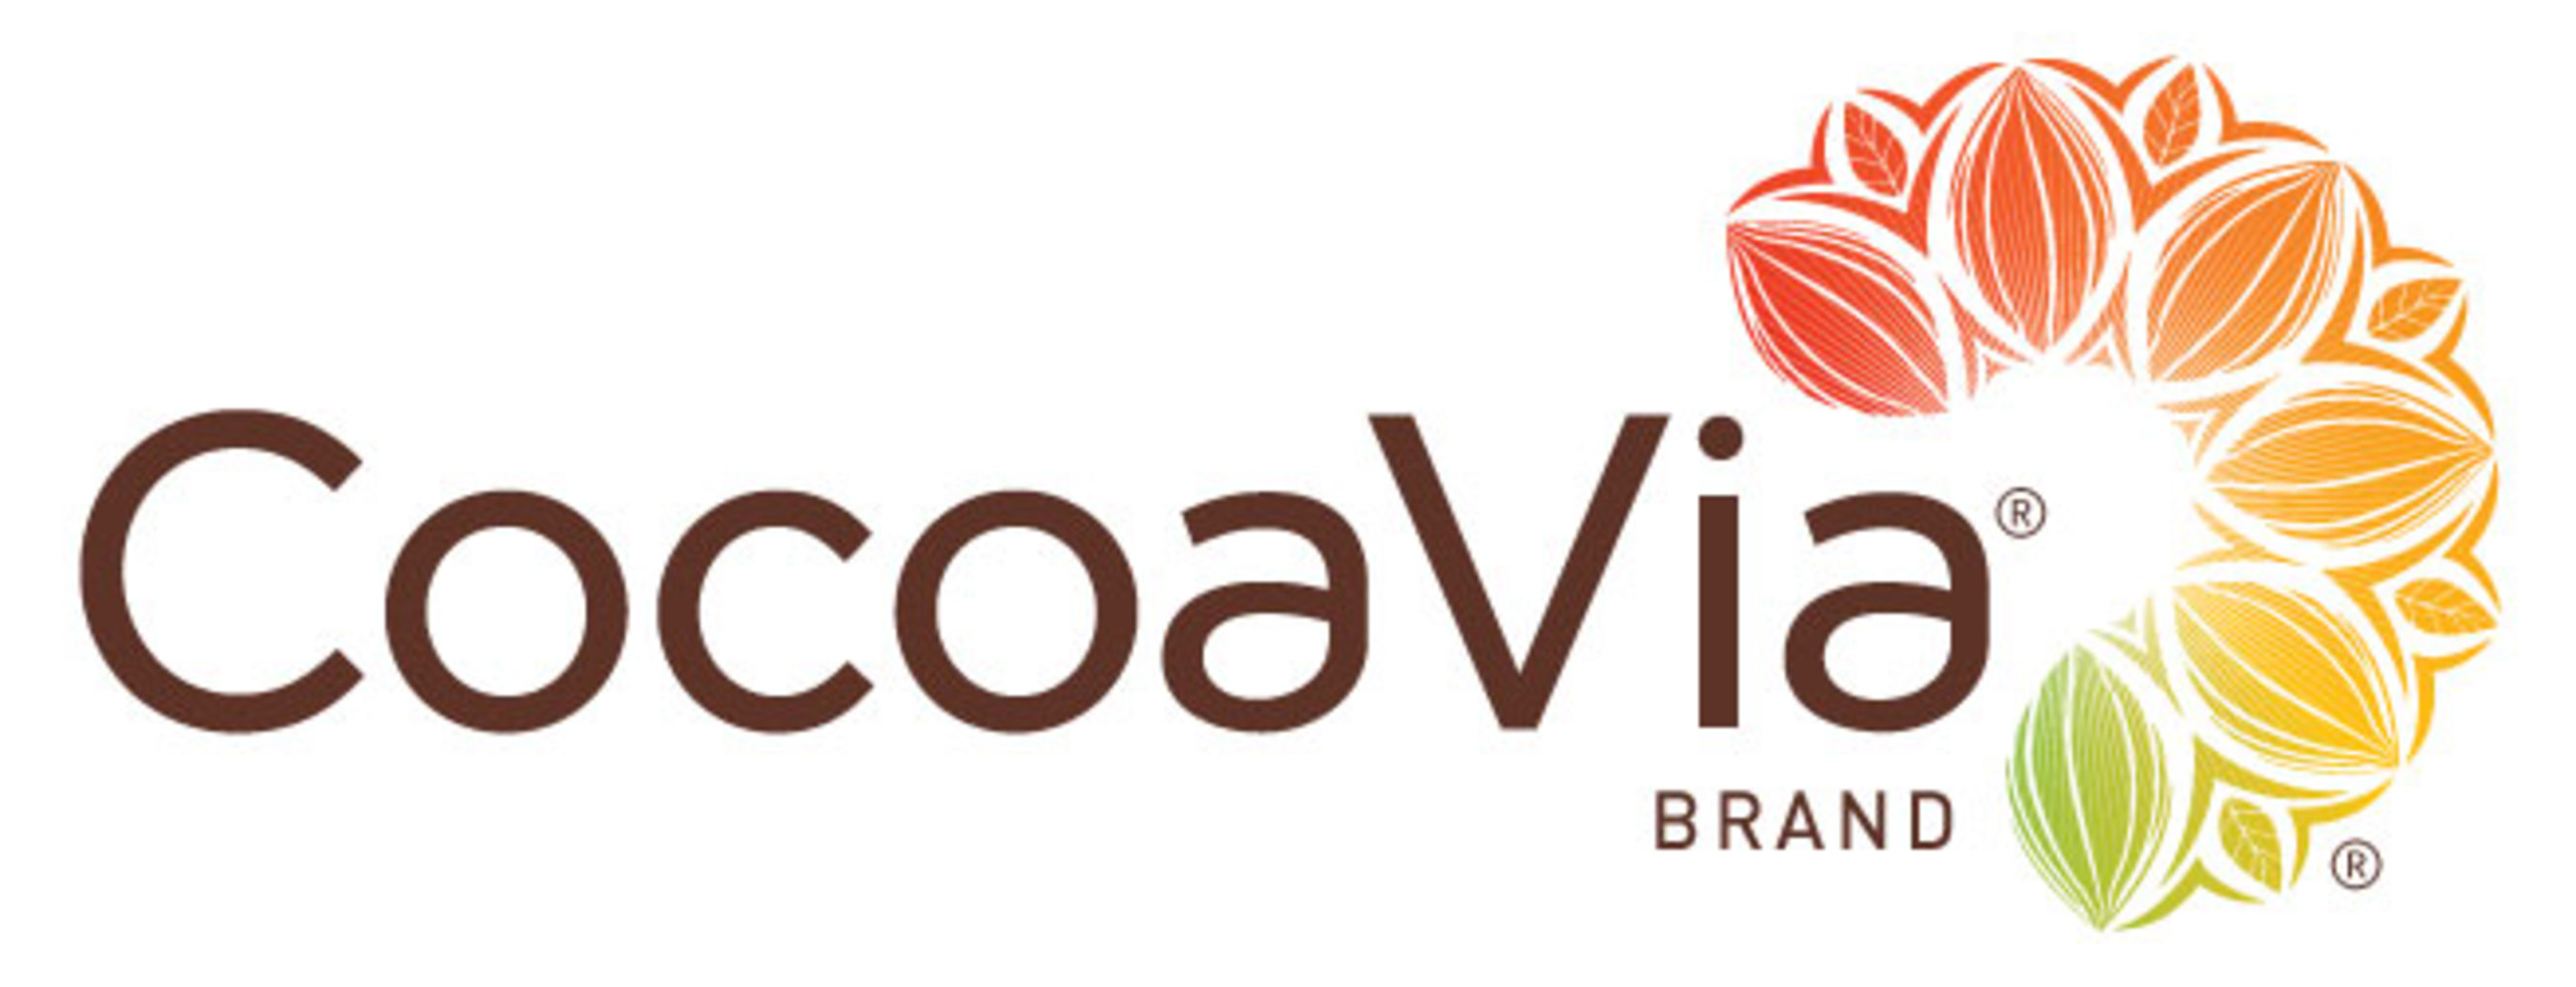 CocoaVia(r) logo